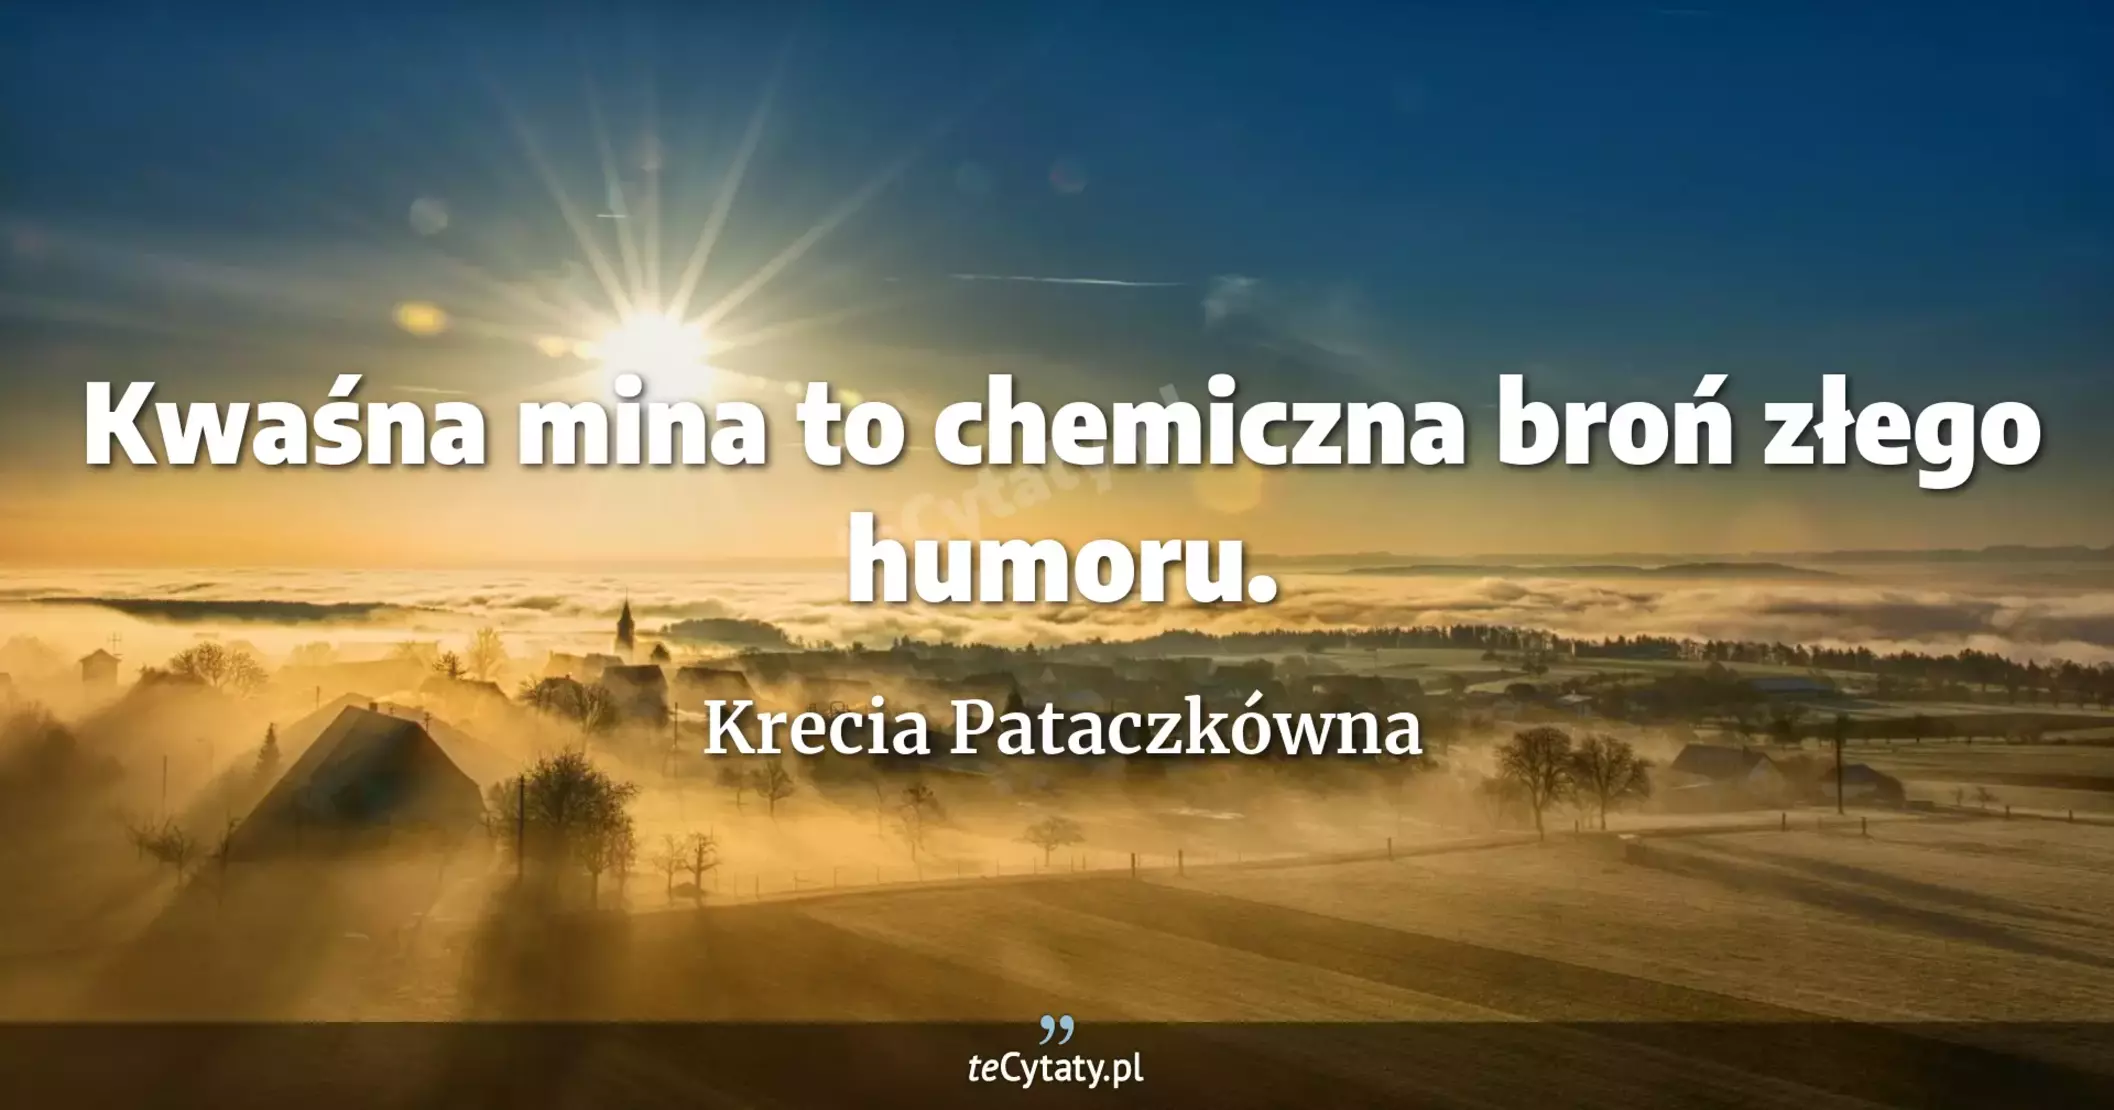 Kwaśna mina to chemiczna broń złego humoru. - Krecia Pataczkówna